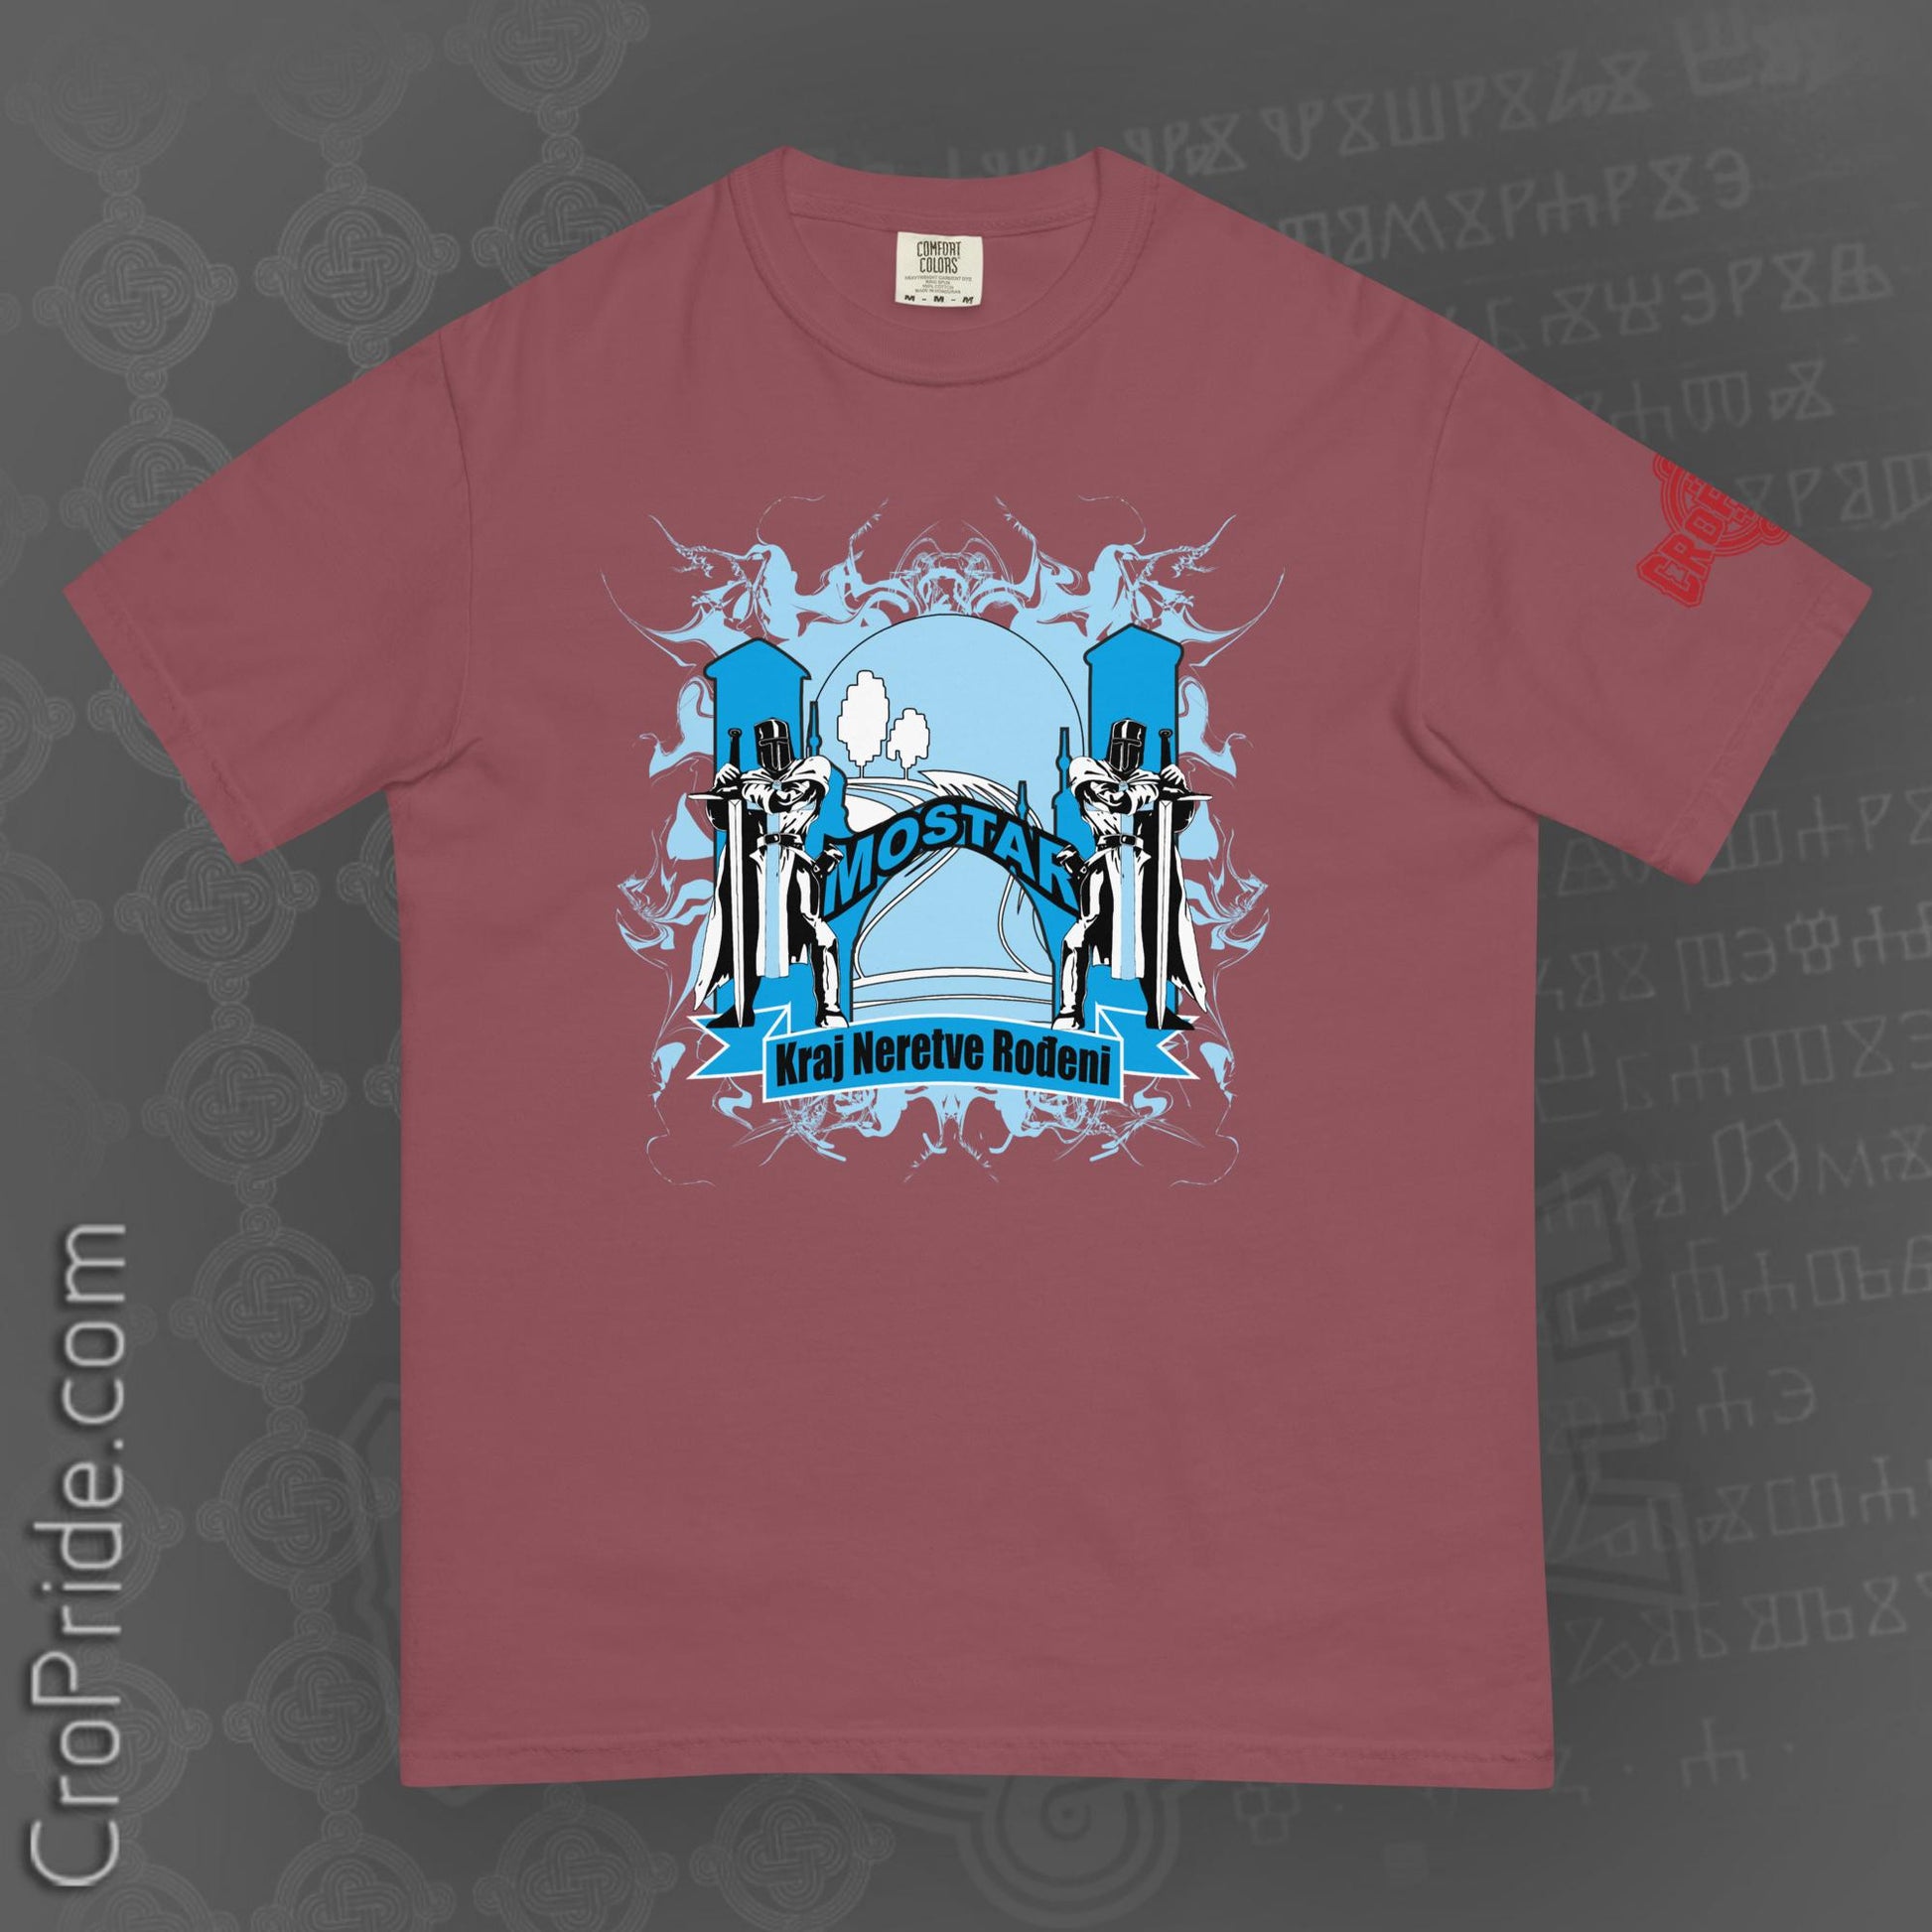 "Mostar"-Hercegovina Men’s T-shirt Designed By CroPride Gear